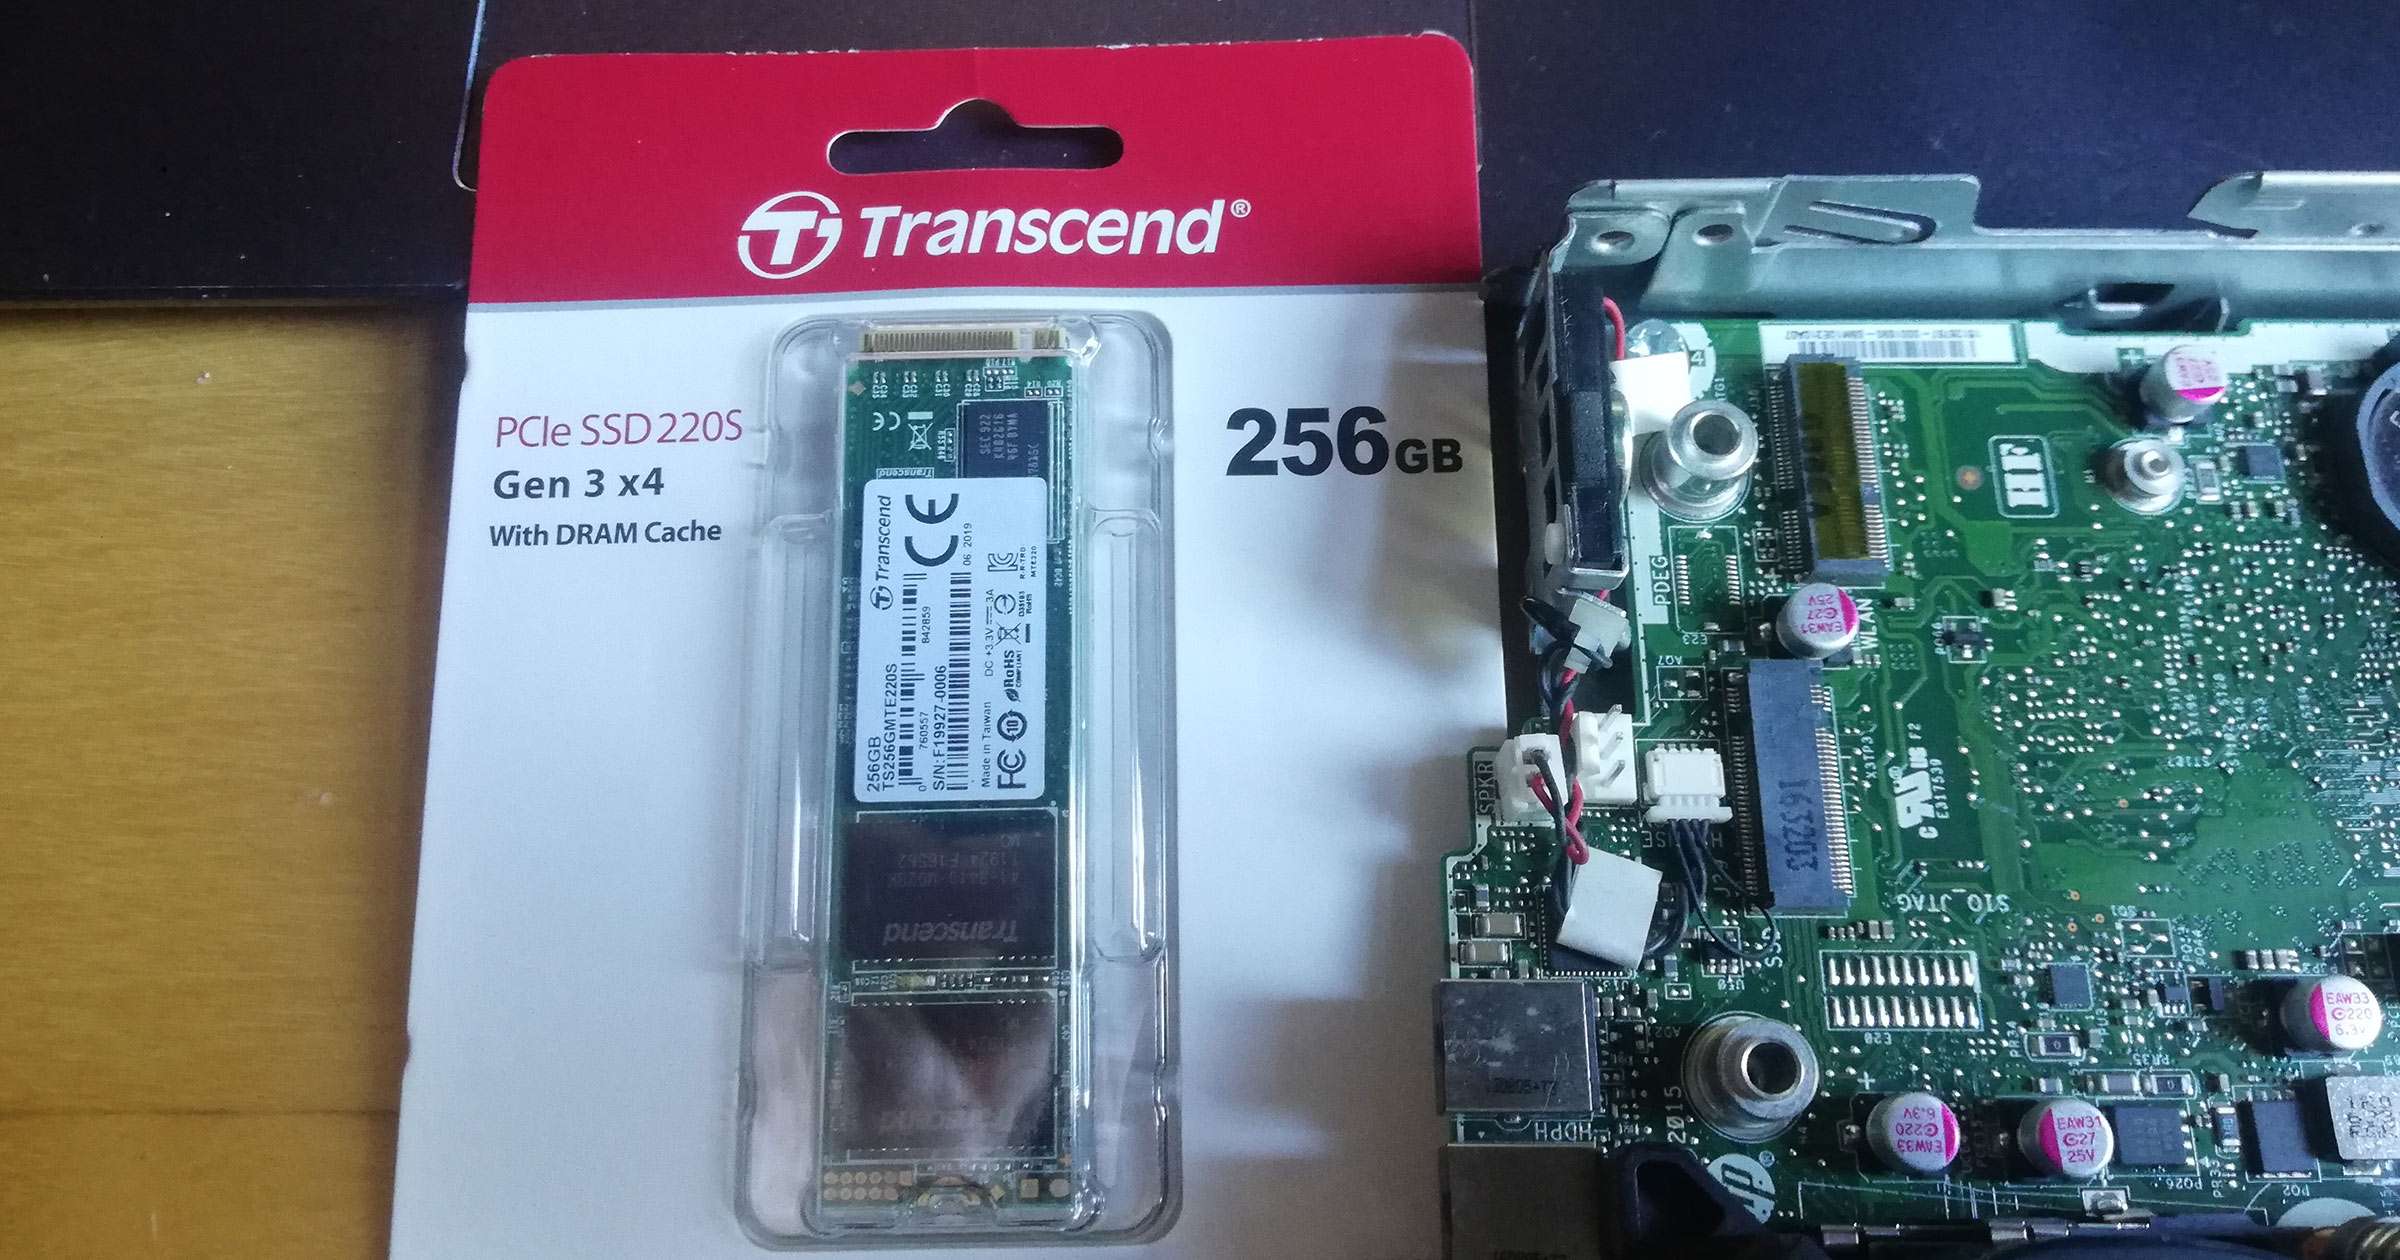 [PL] Szybka recenzja dysku SSD: Transcend 220S – 256GB